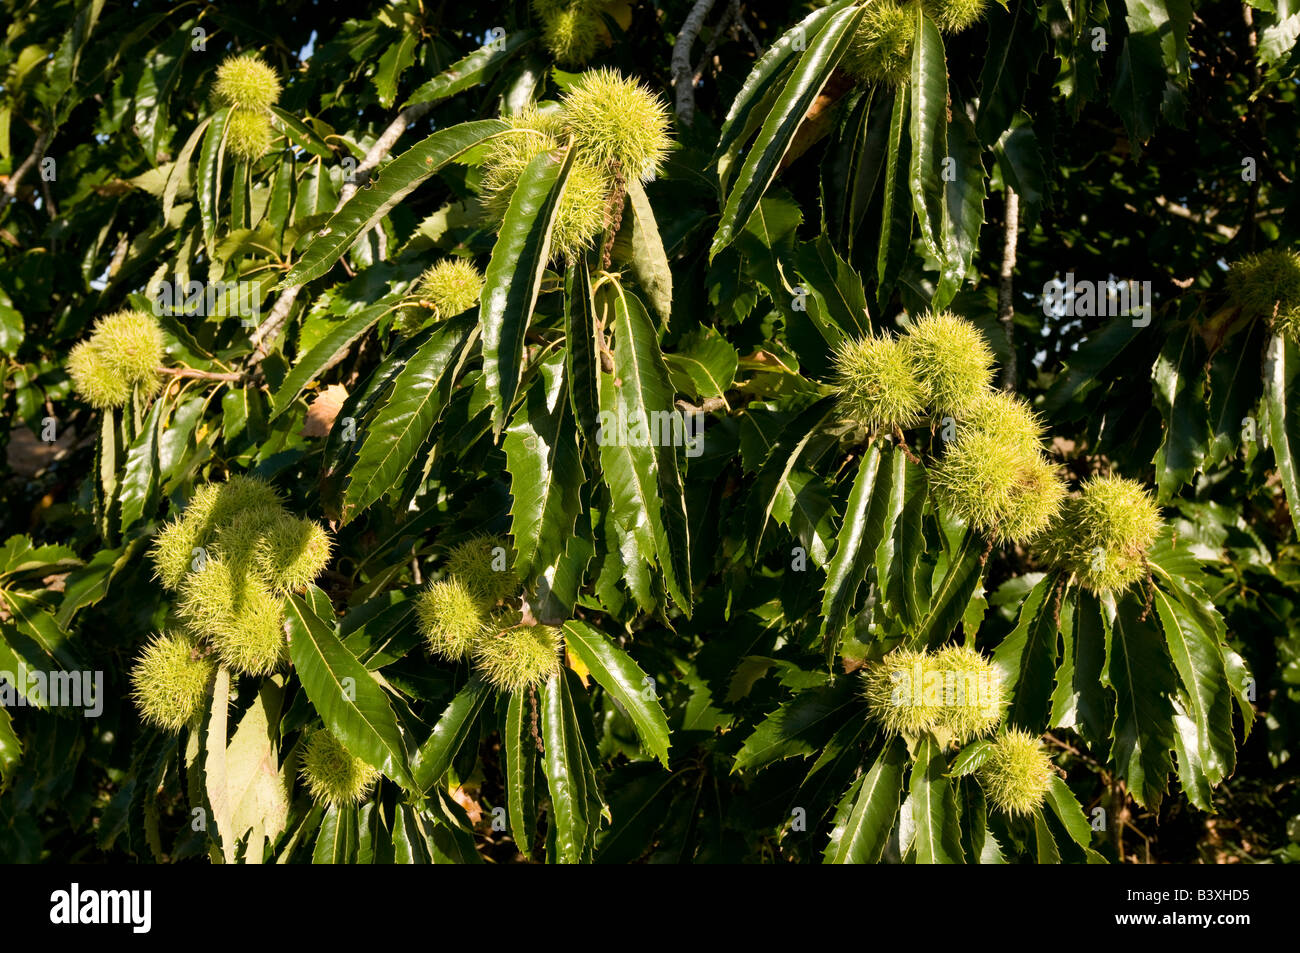 Spanische Kastanie Baum Früchte - Castanea Sativa - Indre et Loire, Frankreich. Stockfoto